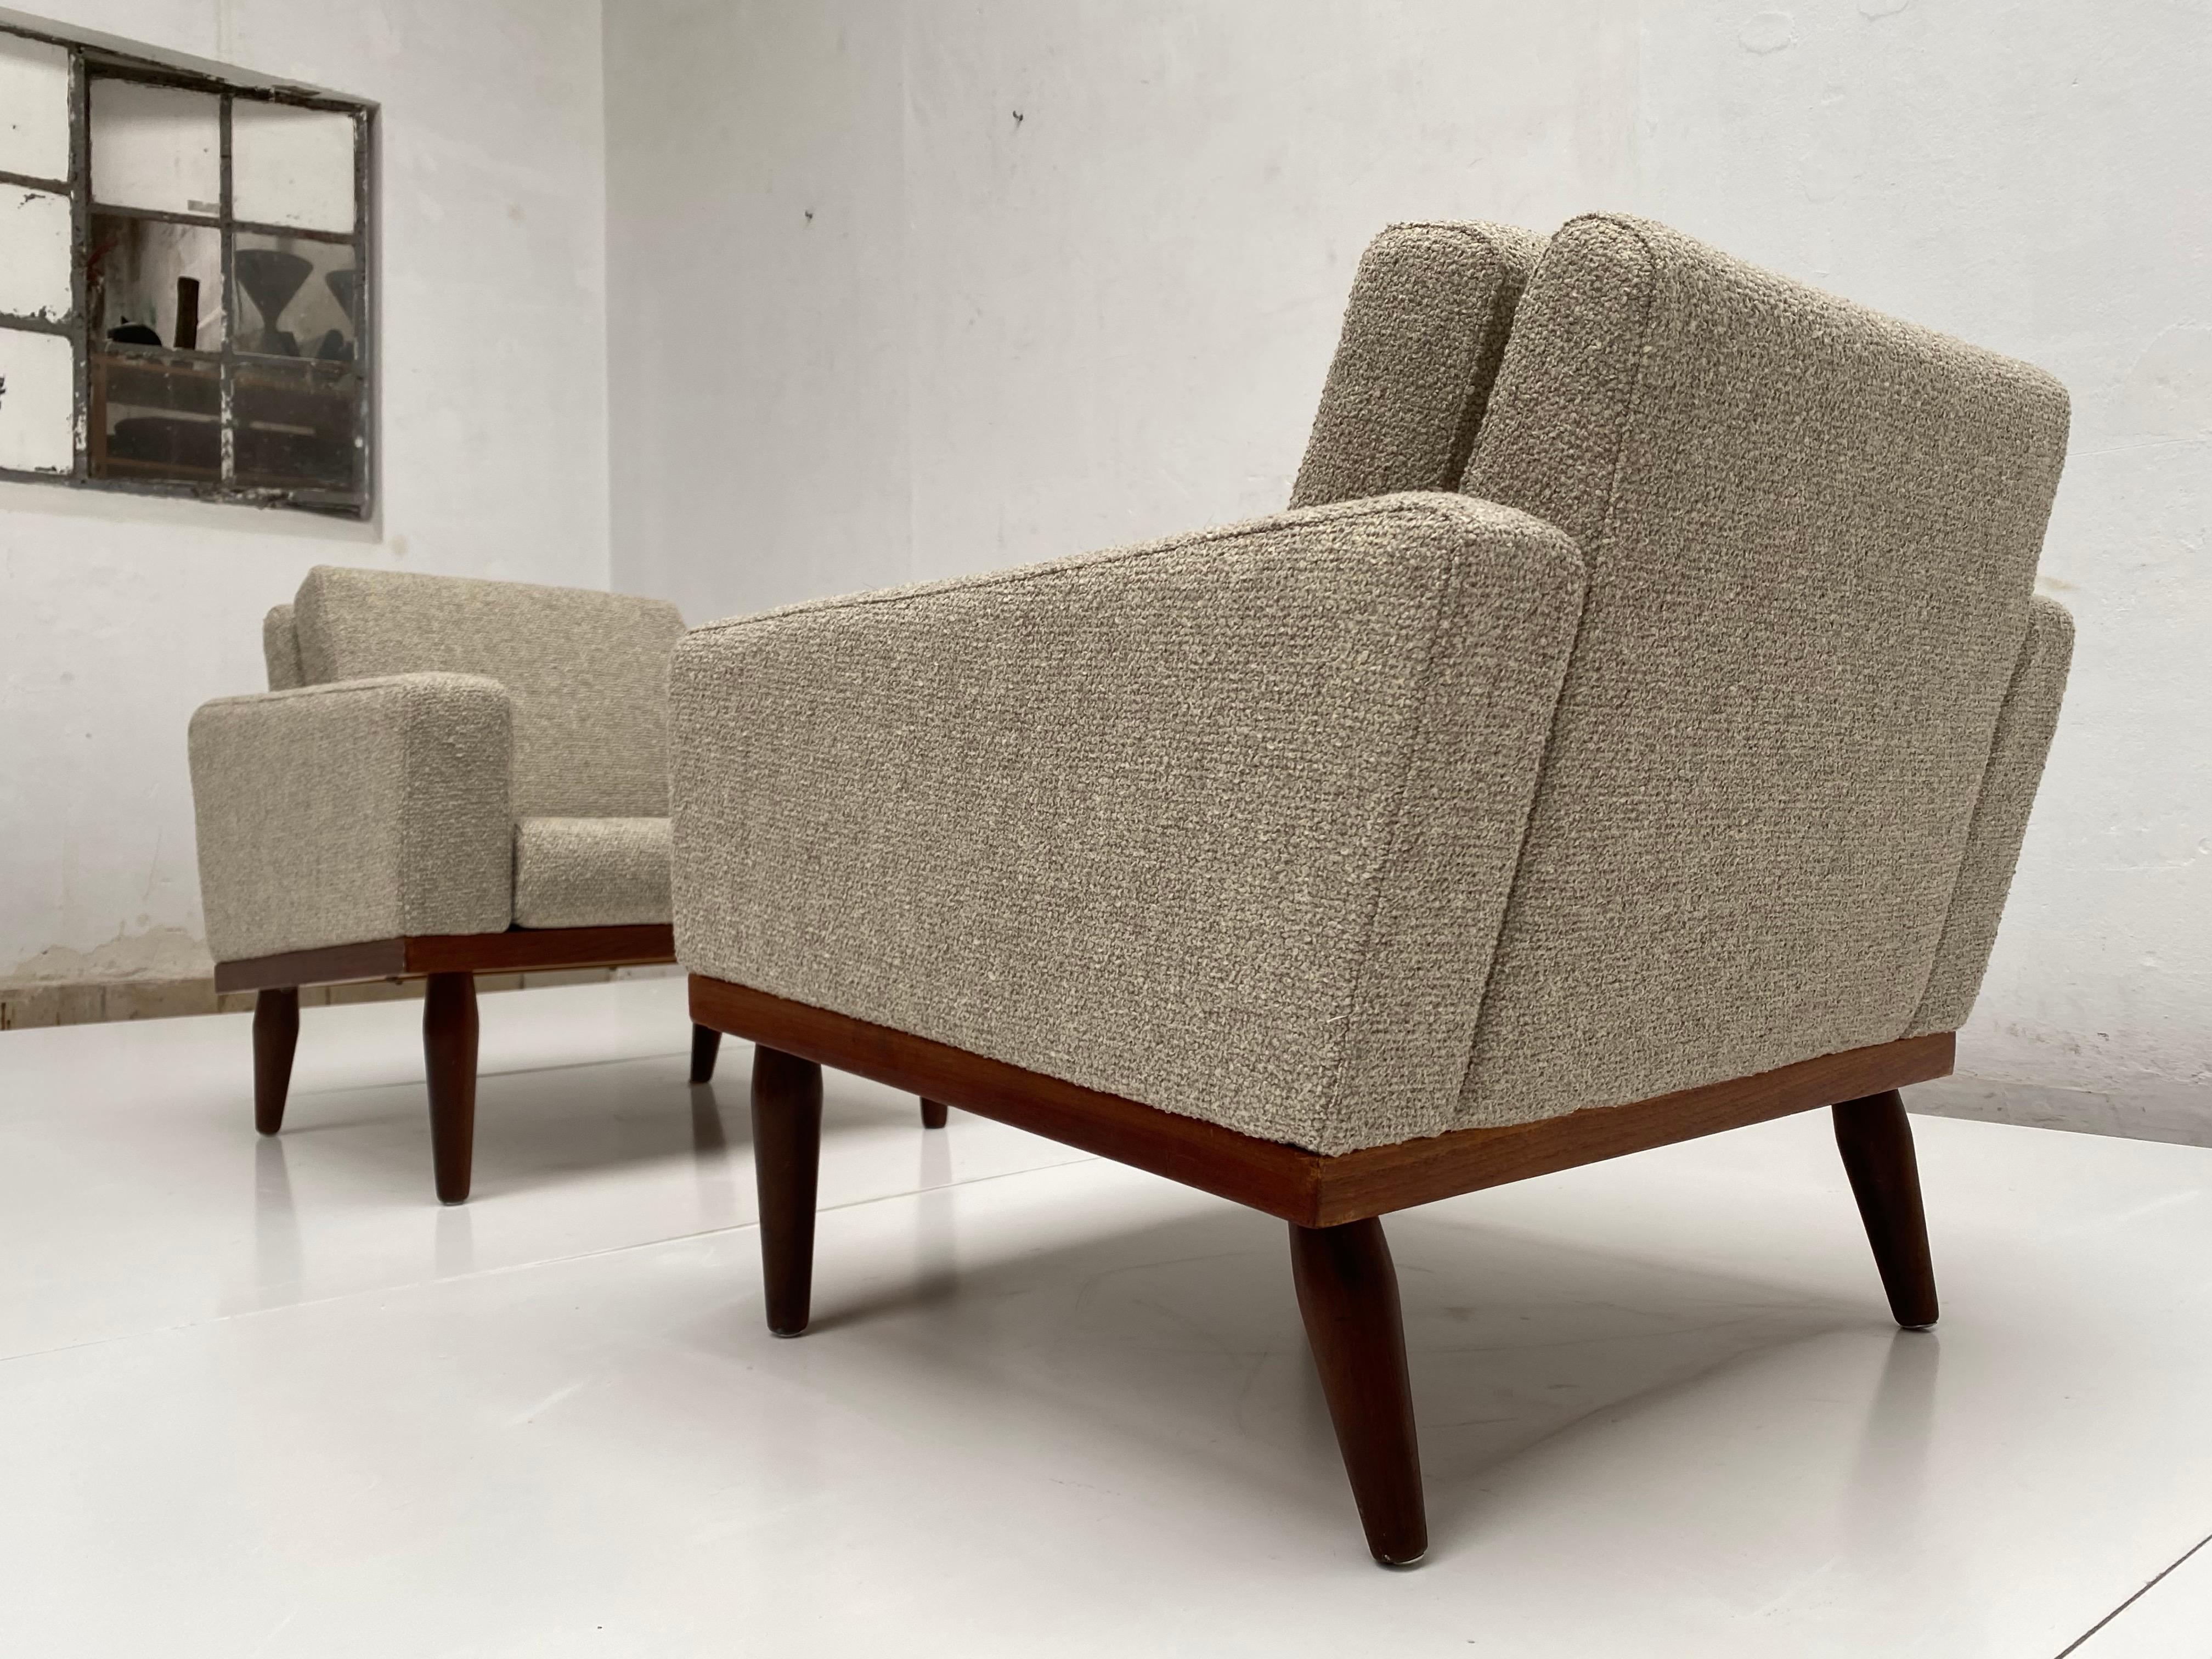 Superbe paire de fauteuils de salon danois rembourrés neufs marqués Bovenkamp

Bovenkamp était une société basée aux Pays-Bas qui importait des meubles danois de célèbres designers comme Aksel Bender Madesen dans les années 1950 et 1960

Ces